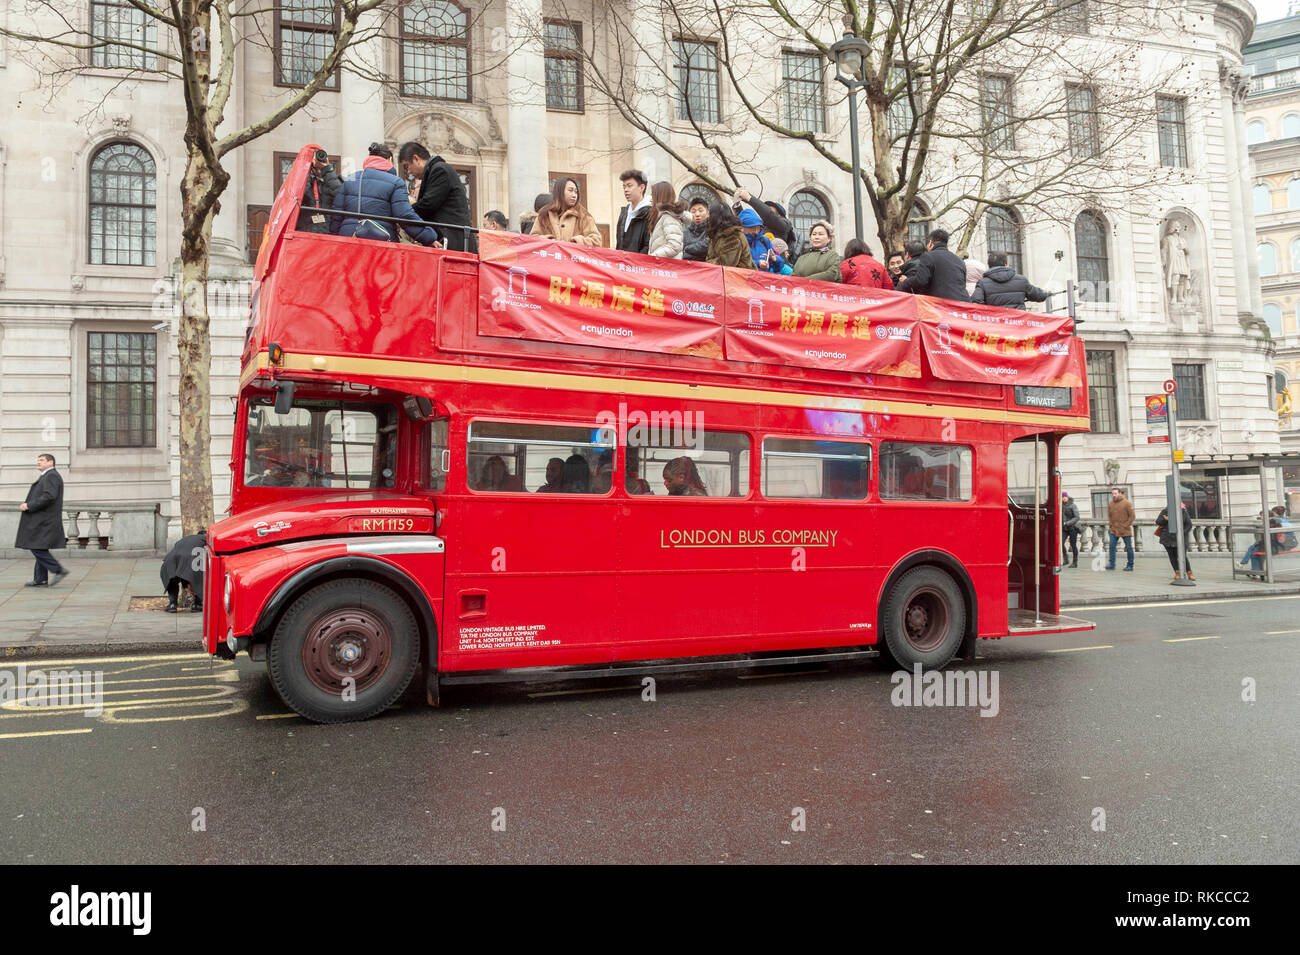 Londres, Royaume-Uni. 10 fév, 2019. Volkswagen Bus Rouge londonien traditionnel bus touristiques raedy pour suivre défilé de Trafalgar Square à Londres, Angleterre, Royaume-Uni., pendant les célébrations du Nouvel An chinois. Crédit : Ian Laker/Alamy Live News. Banque D'Images